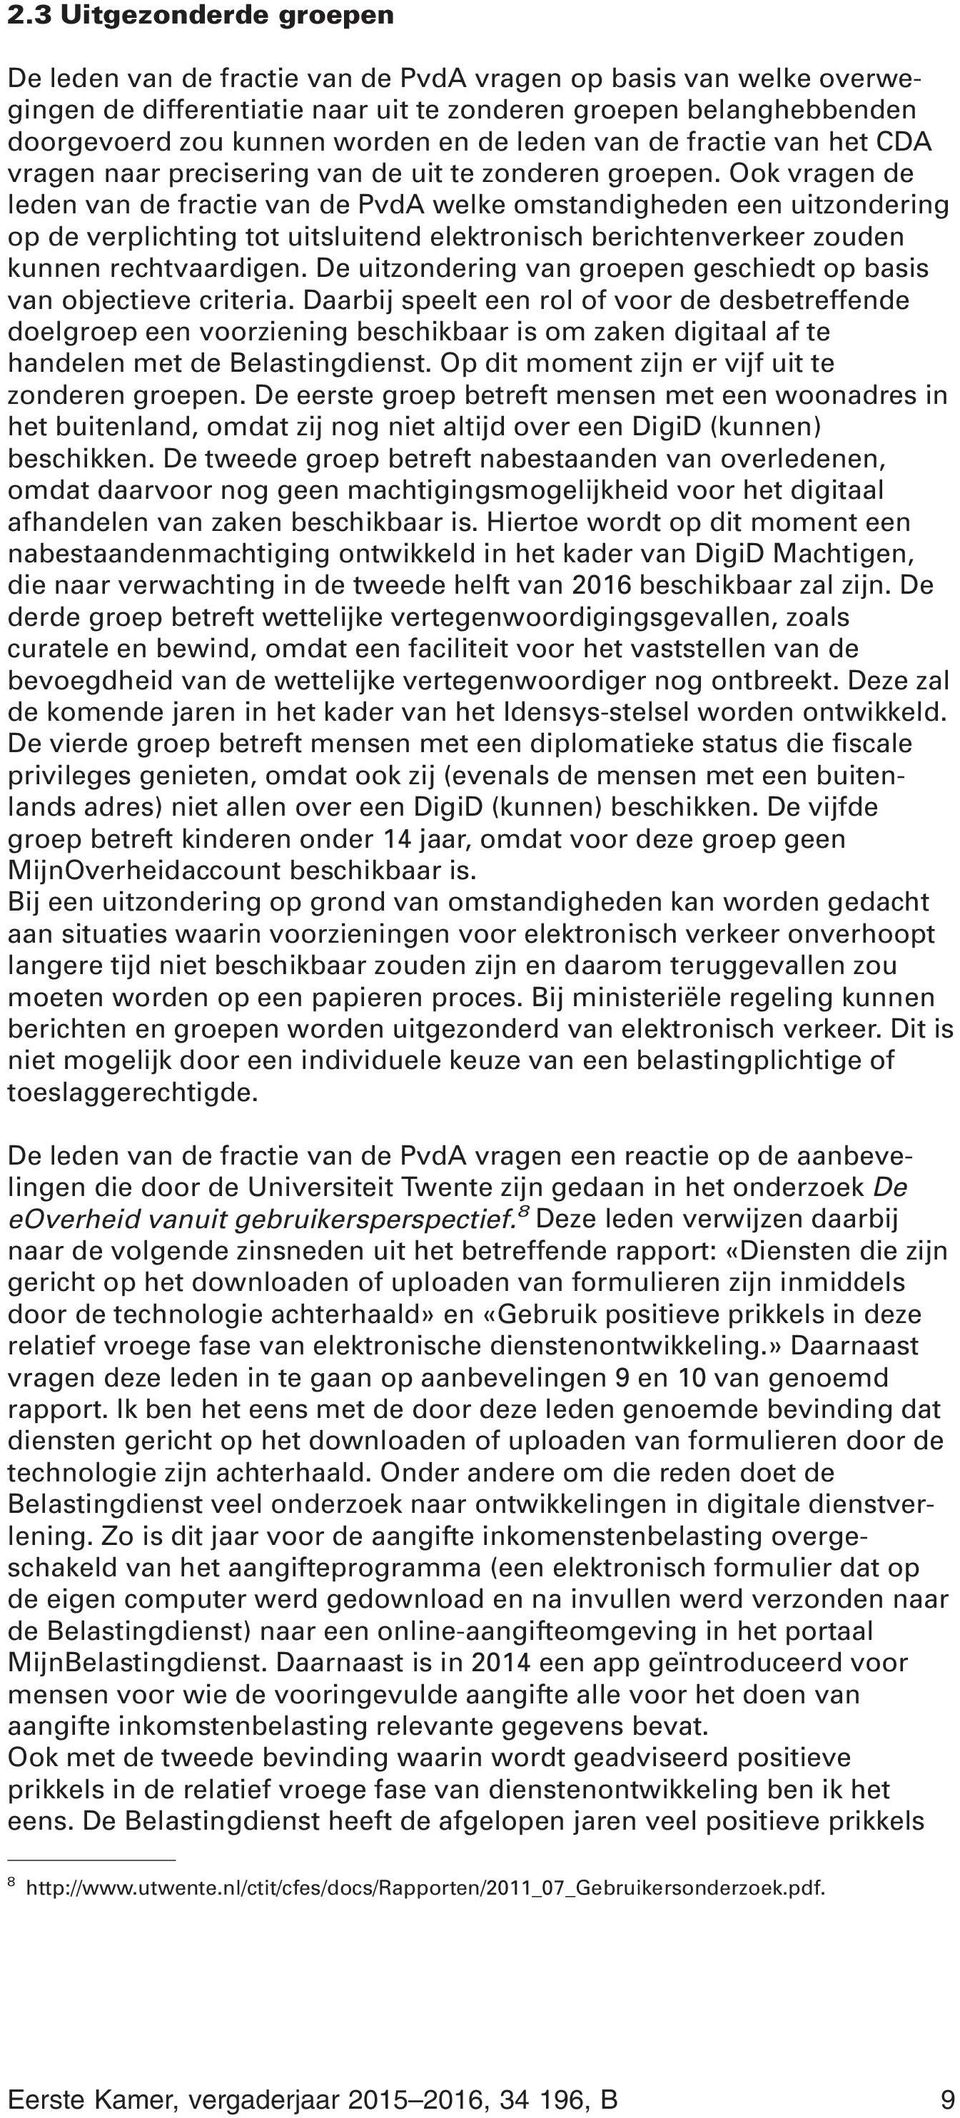 Ook vragen de leden van de fractie van de PvdA welke omstandigheden een uitzondering op de verplichting tot uitsluitend elektronisch berichtenverkeer zouden kunnen rechtvaardigen.